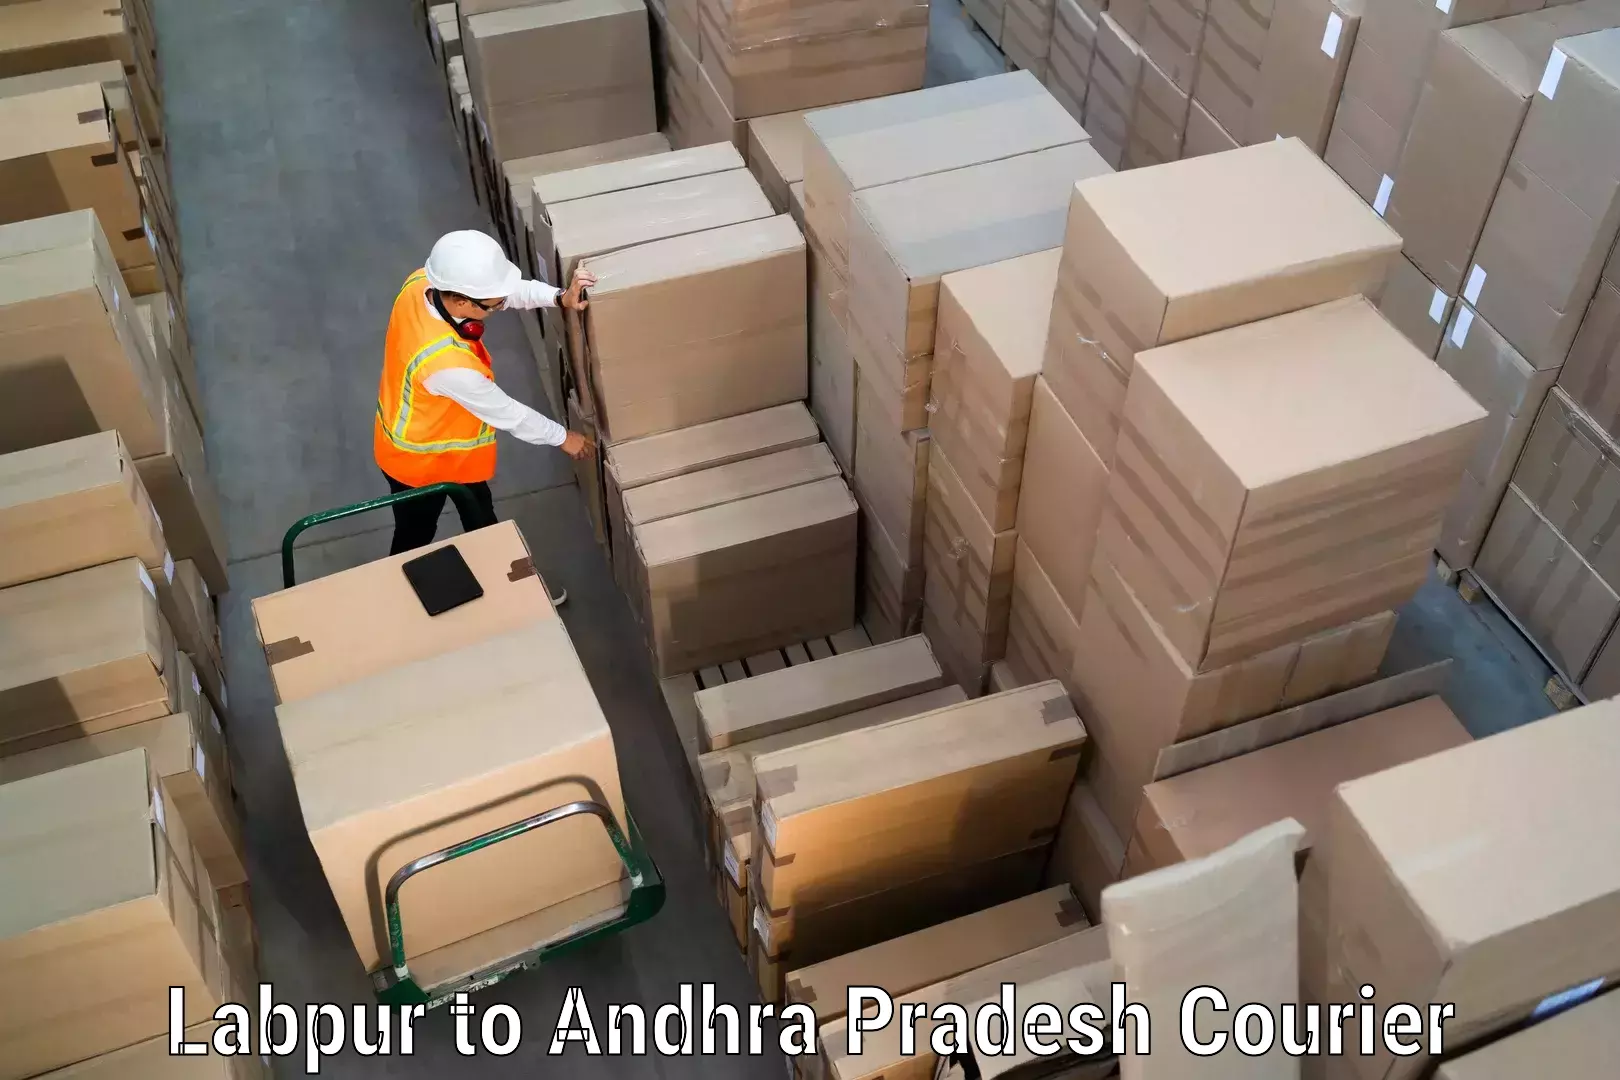 24-hour courier services Labpur to Gudivada